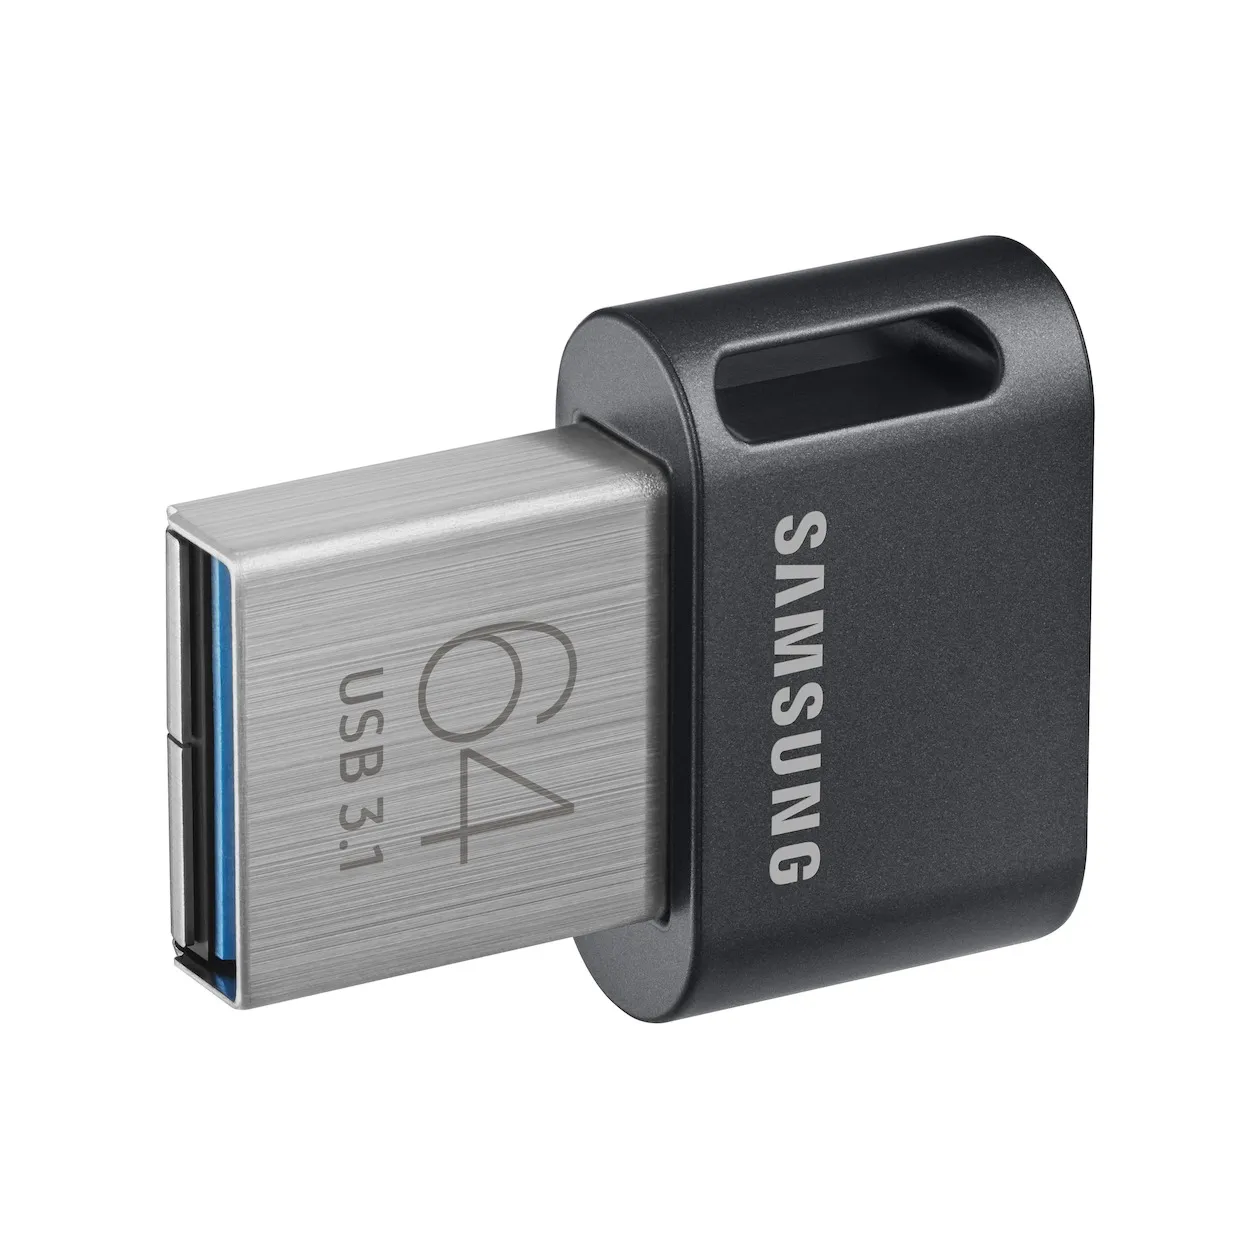 Samsung FIT Plus USB Stick 64GB Zwart